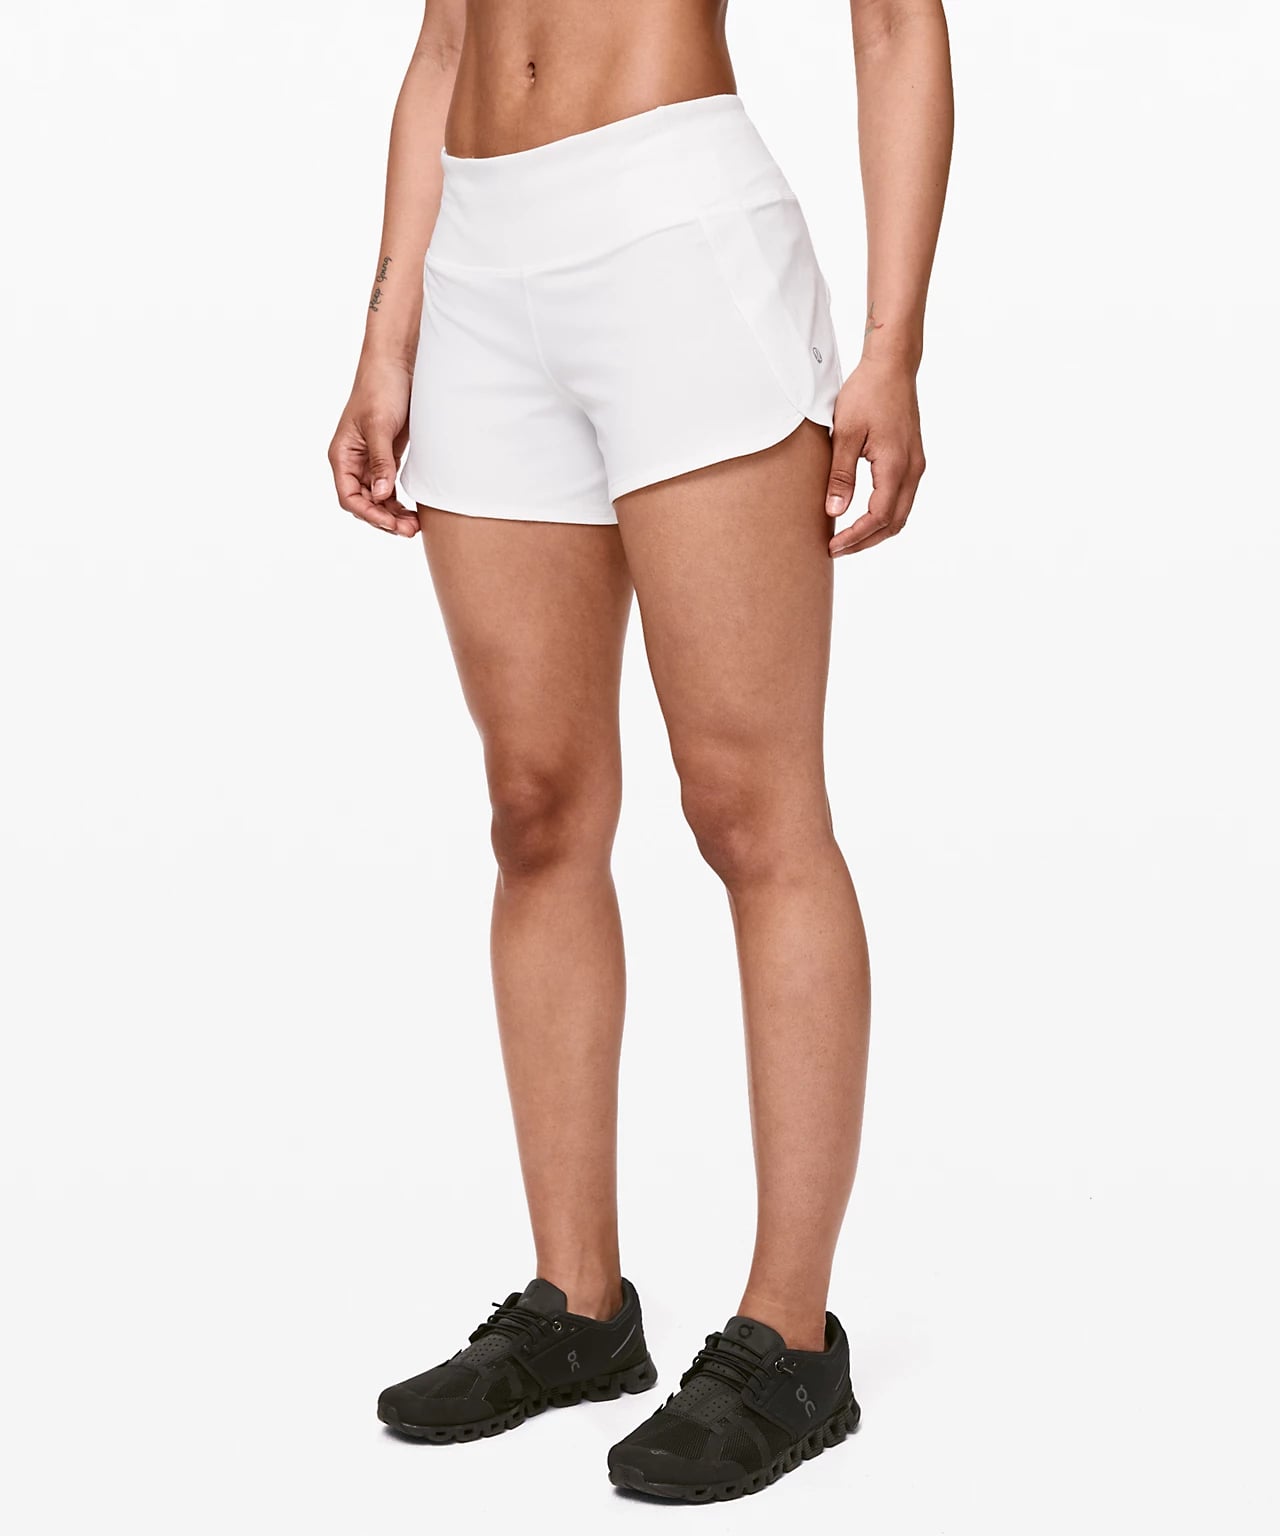 types of lululemon shorts